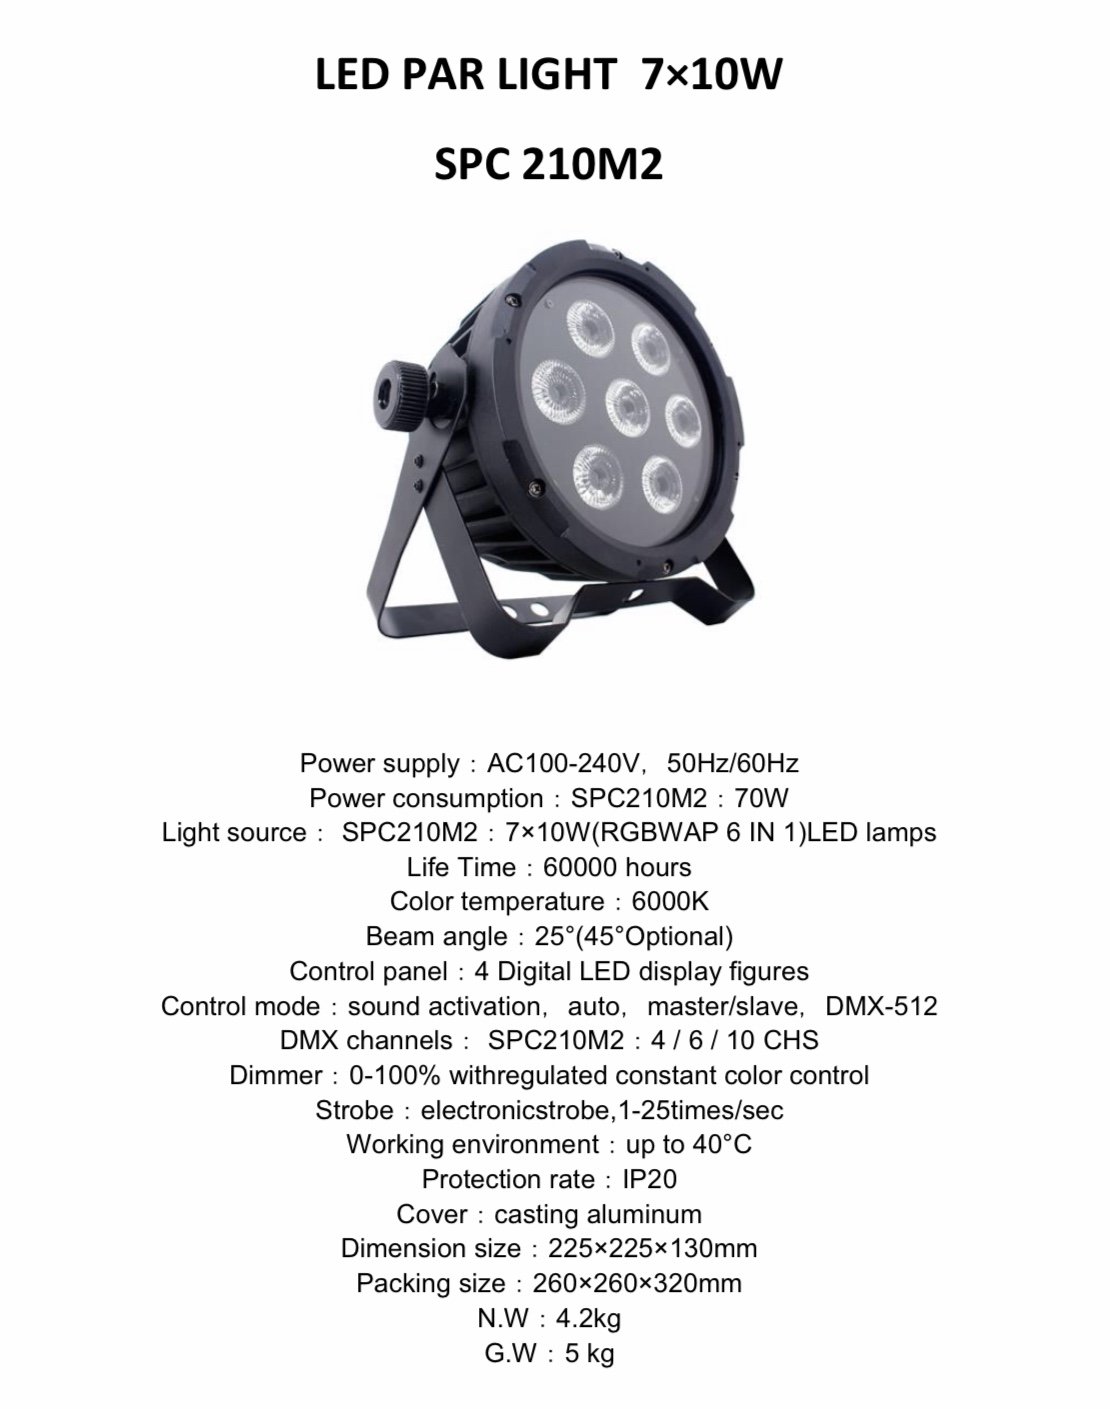 PAR LED SPC 210 M2 (7x10w)